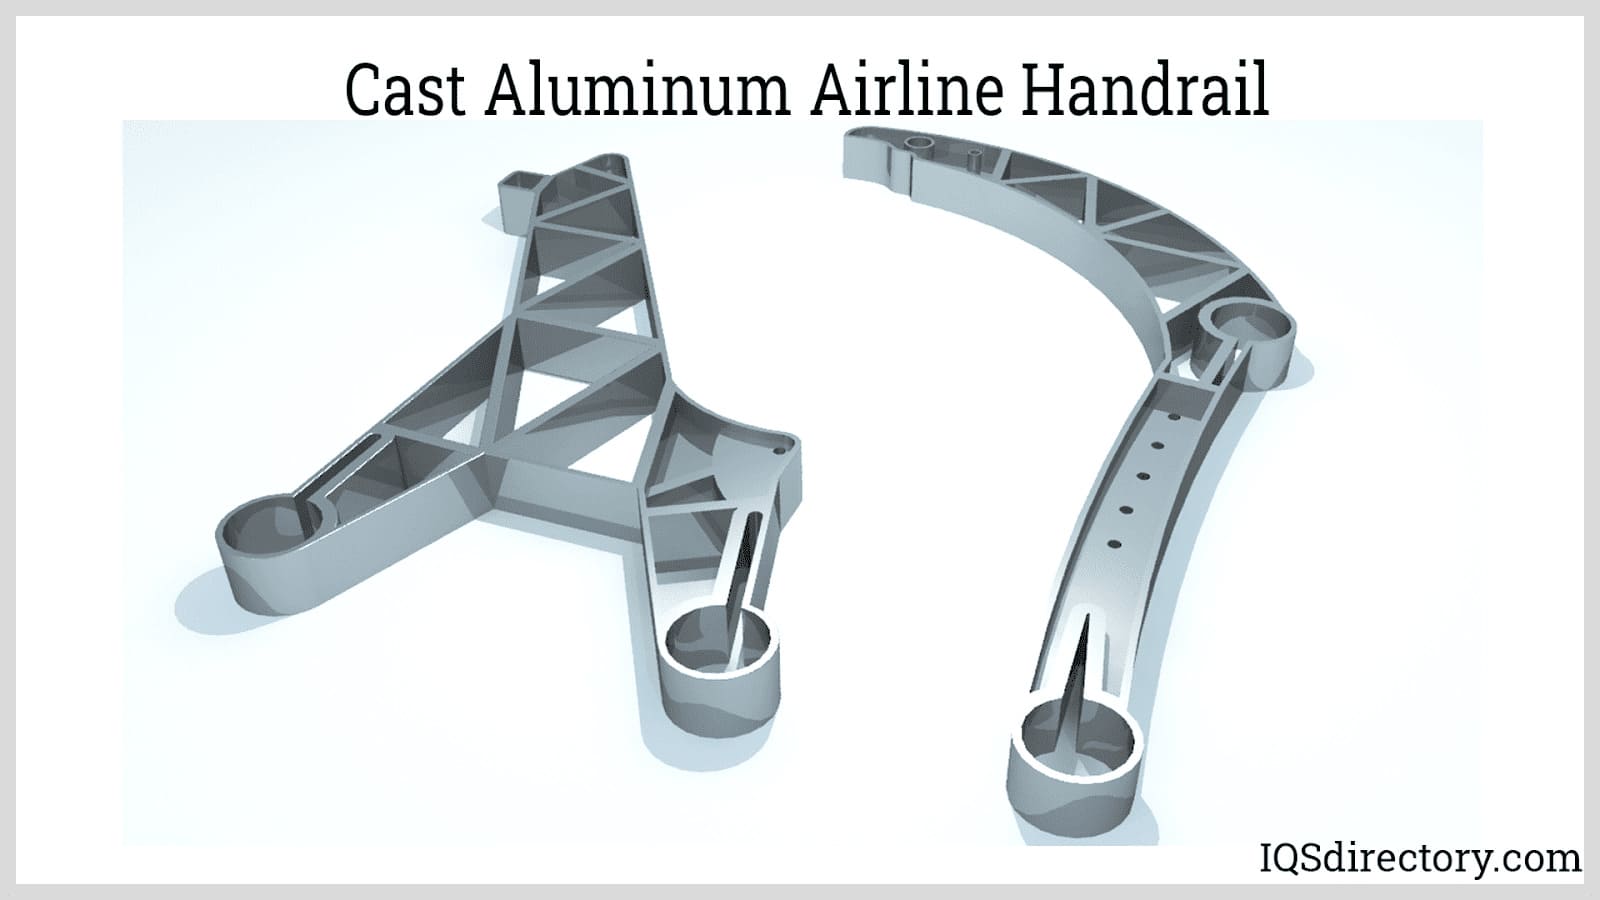 Cast Aluminum Airline Handrail